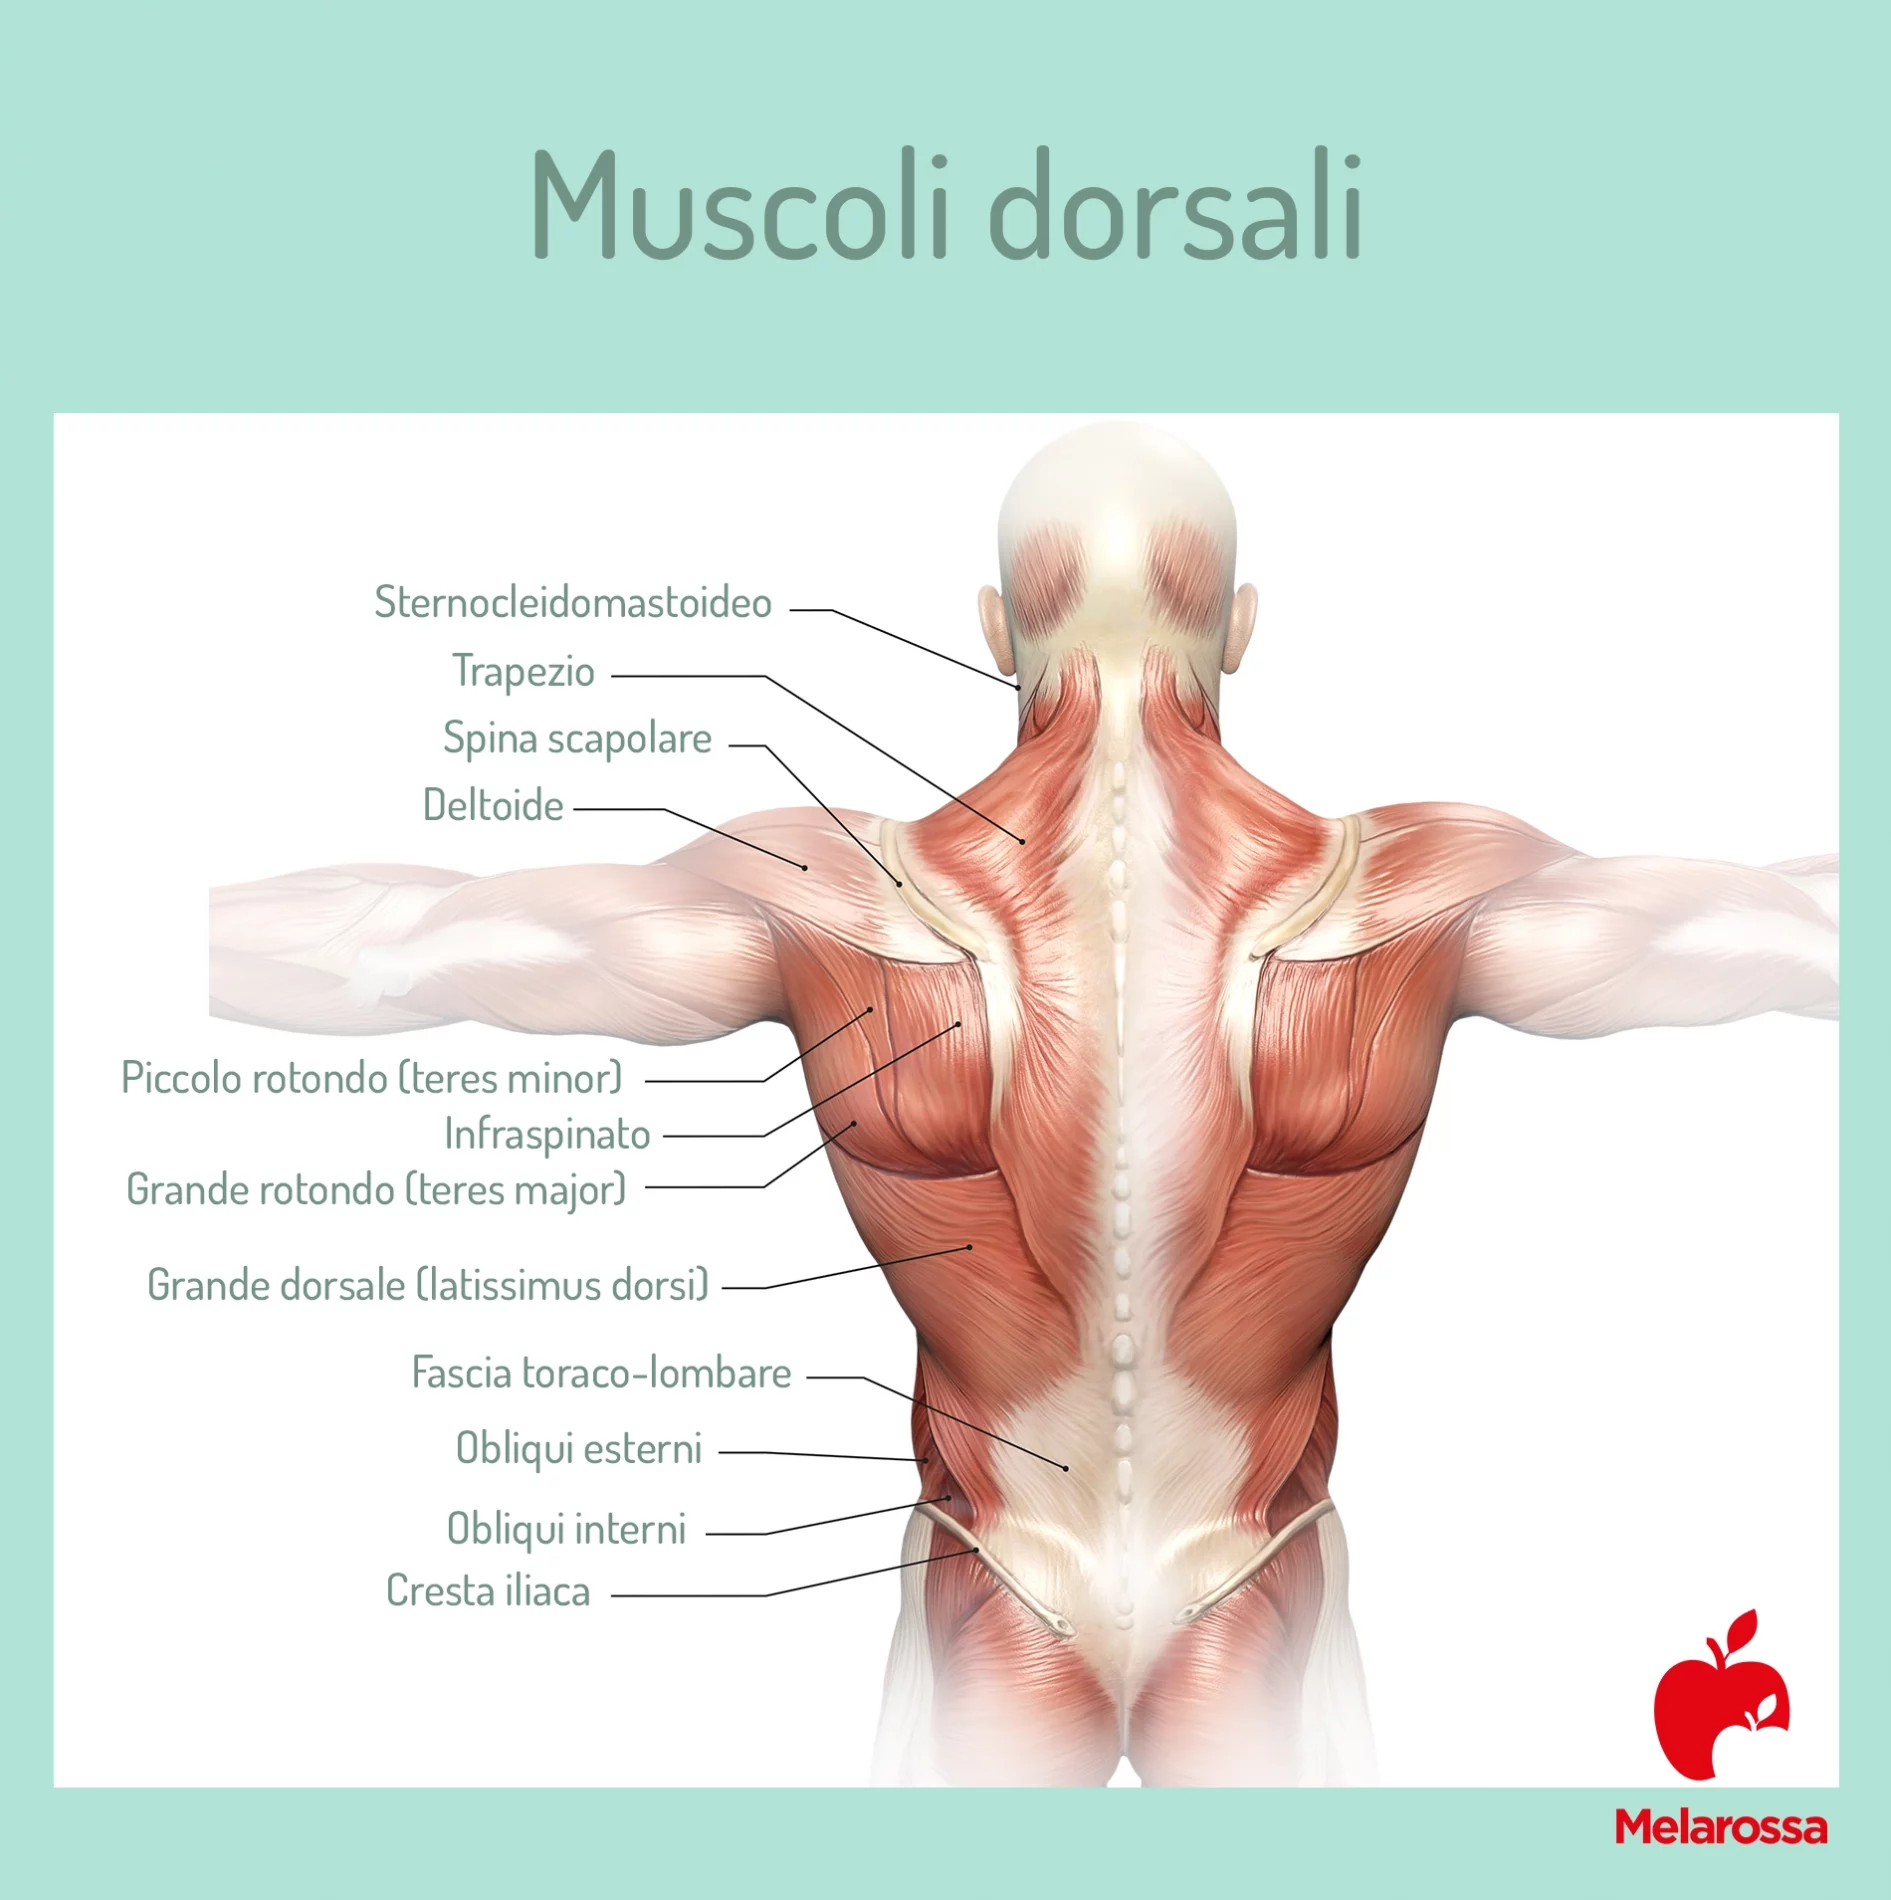 Muscoli dorsali: anatomia 